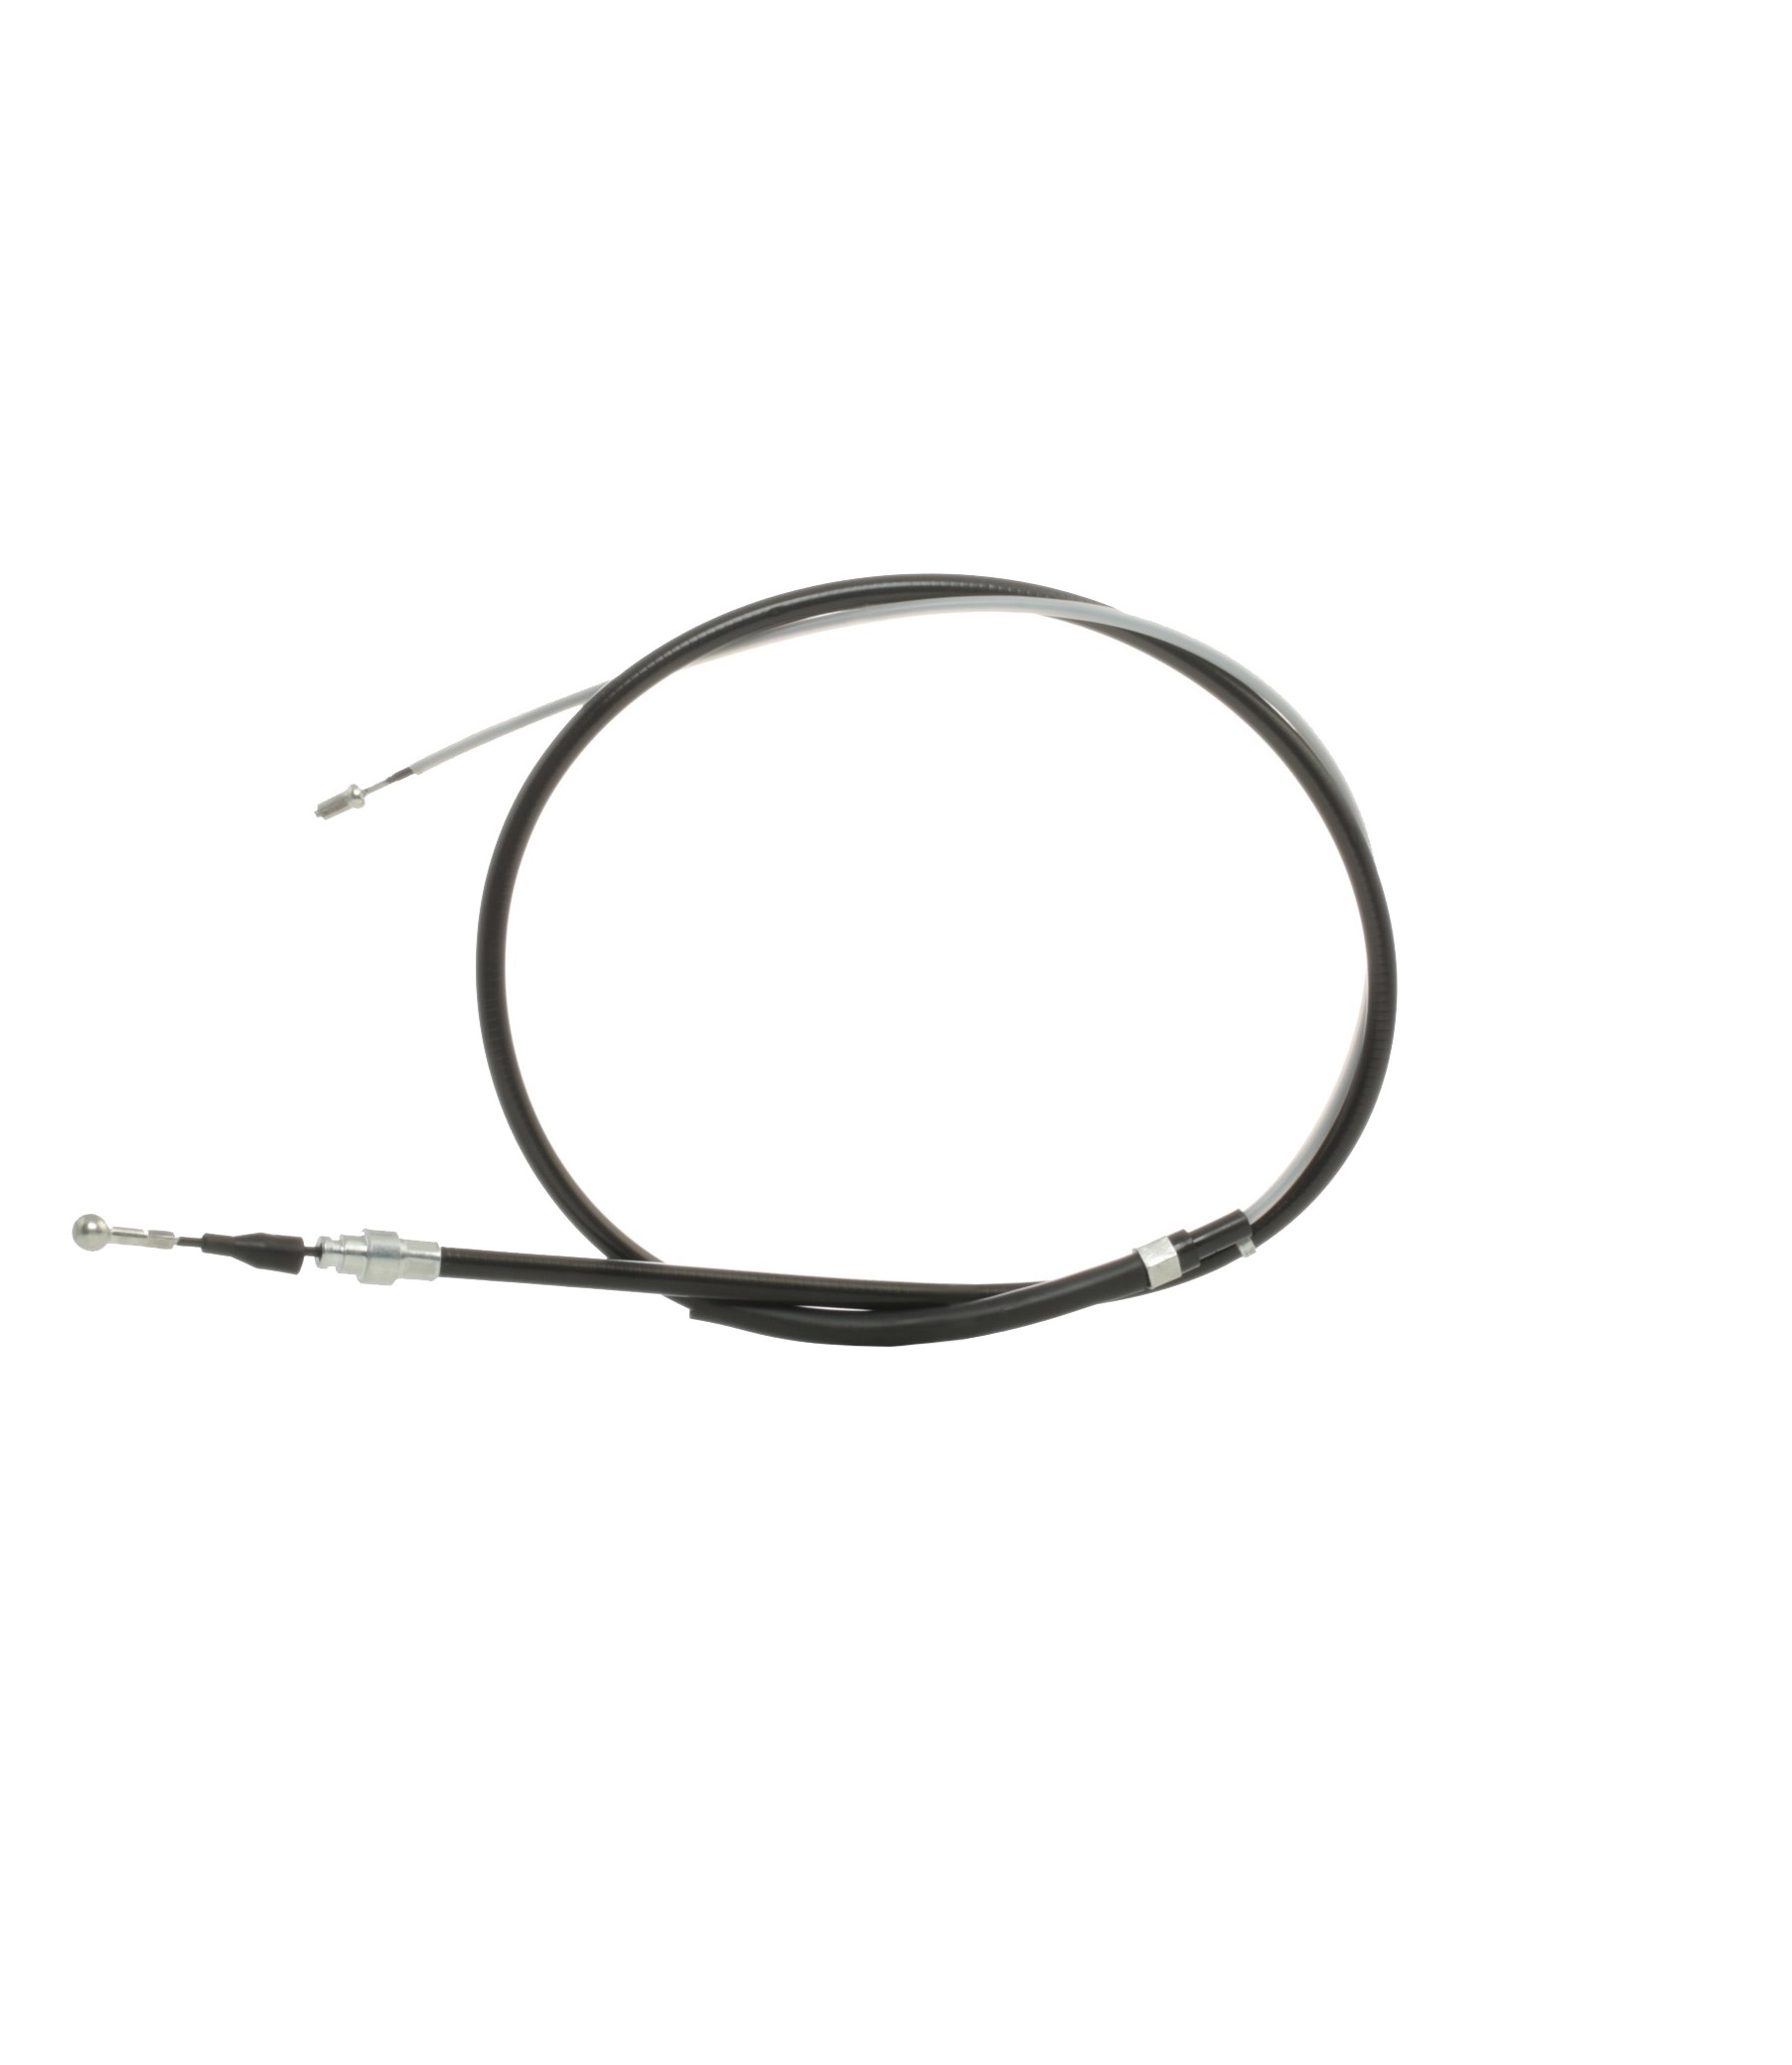 STARK SKCPB-1050004 Hand brake cable Left Rear, Right Rear, 1710mm